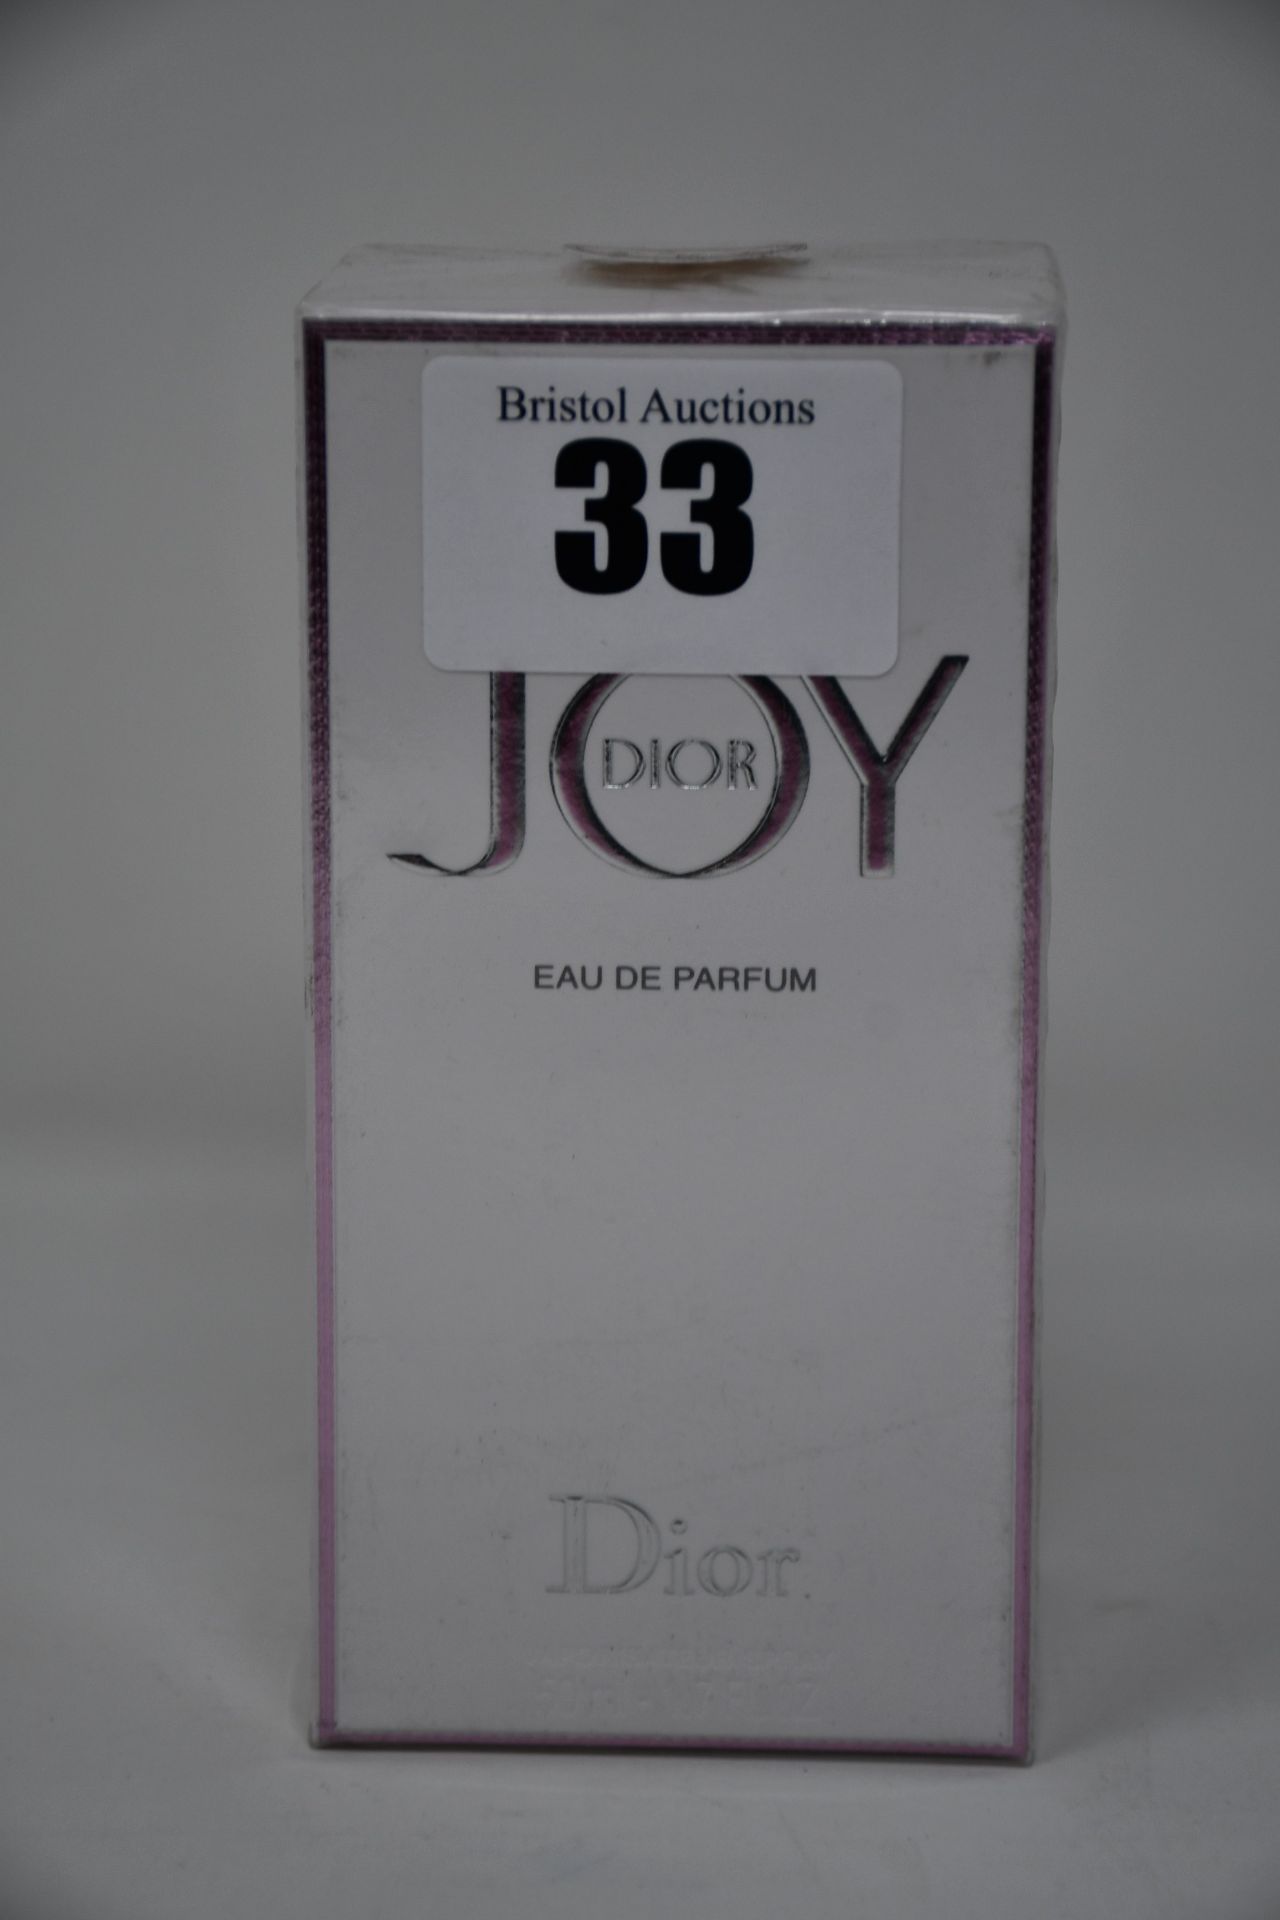 Two Dior Joy eau de parfum (50ml).